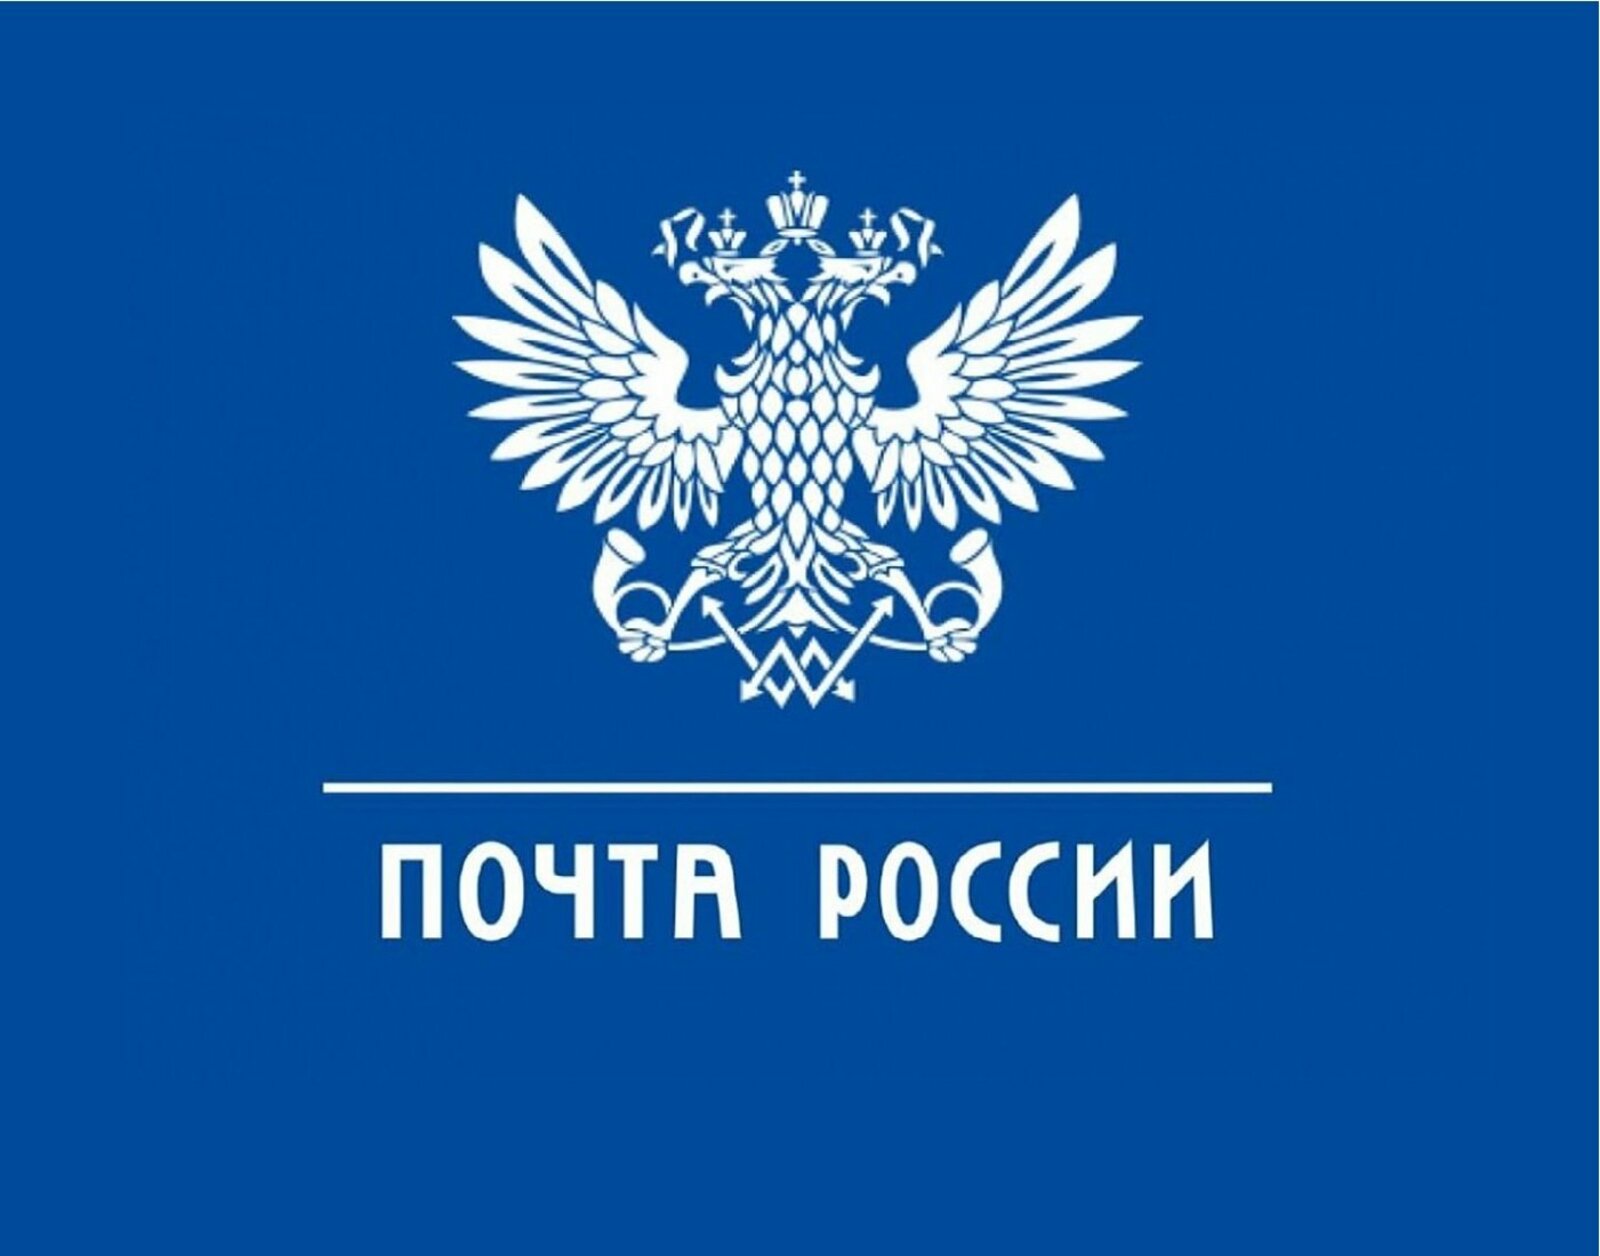 Более 1 600 посылок отправили жители Новгородской области в зону проведения СВО бесплатно по почте.